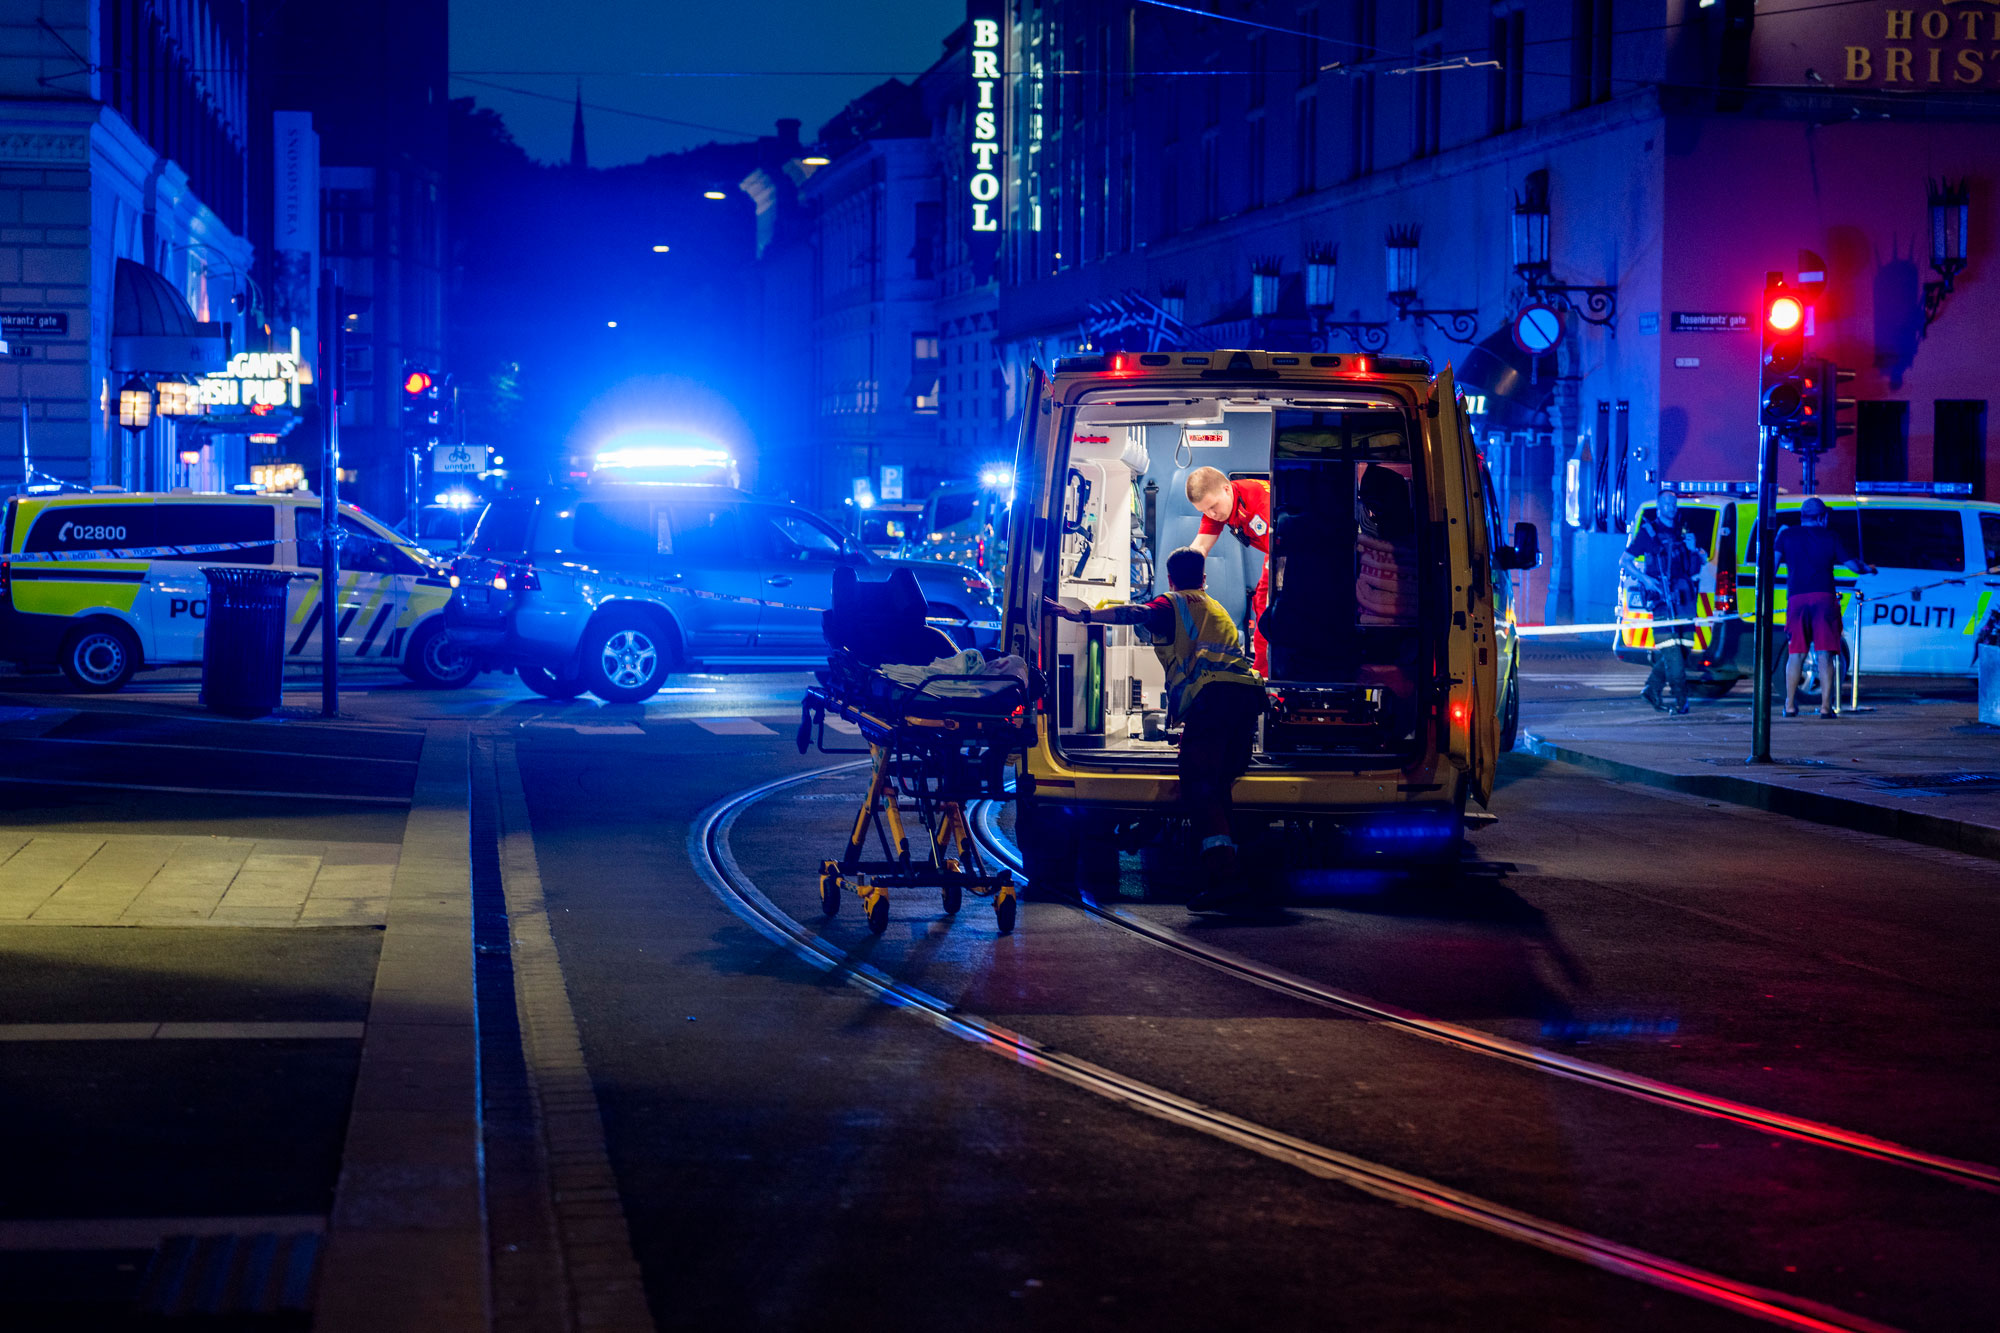 Det ble flere skudd i 1.15-tiden natt til lørdag på utsiden av London pub i sentrum av Oslo. Foto: Javad Parsa / NTB.